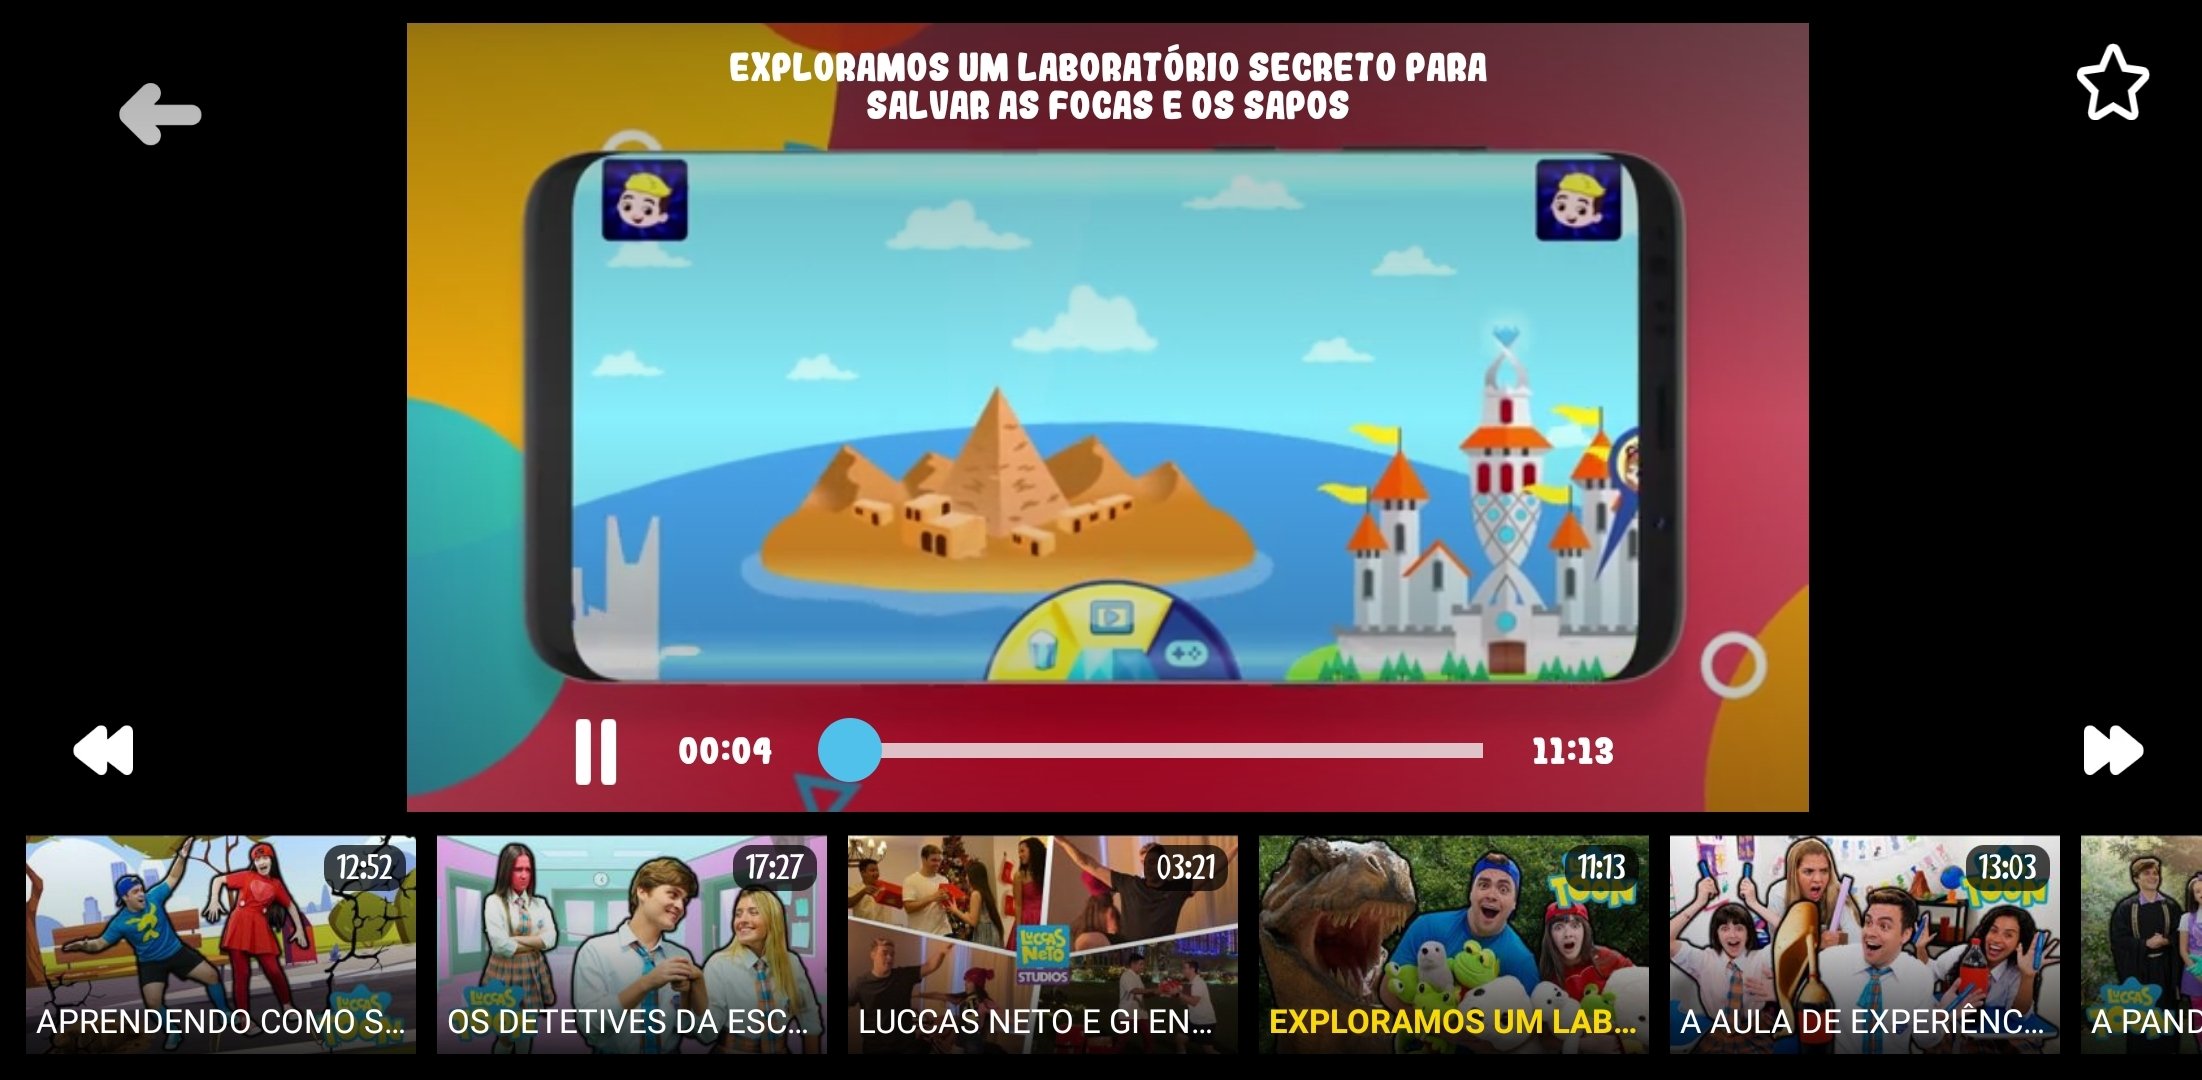 Luccas Toon: Jogos e vídeos - Aplicaciones en Google Play